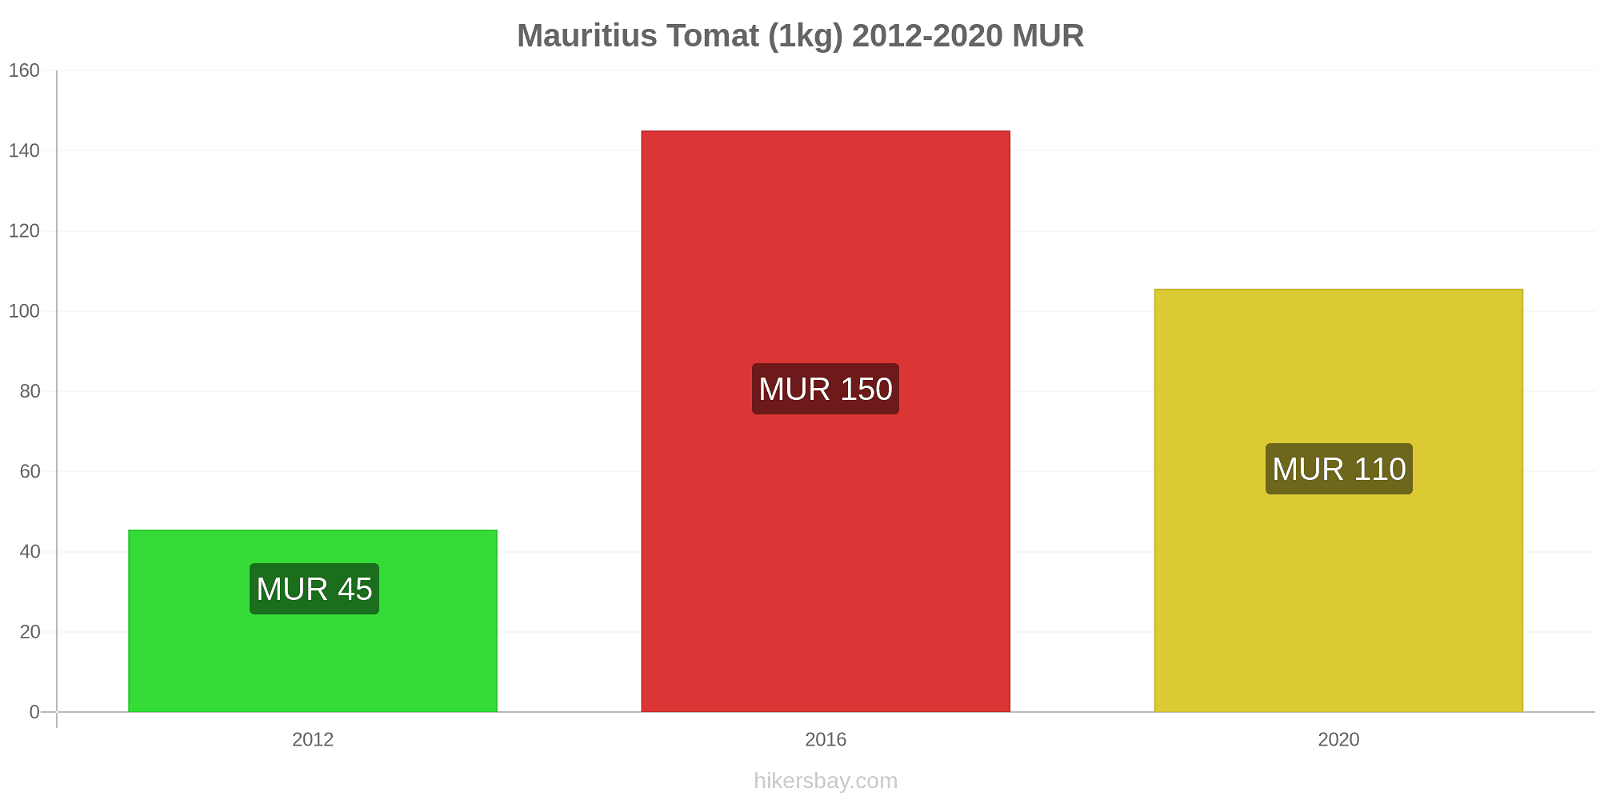 Mauritius perubahan harga Tomat (1kg) hikersbay.com